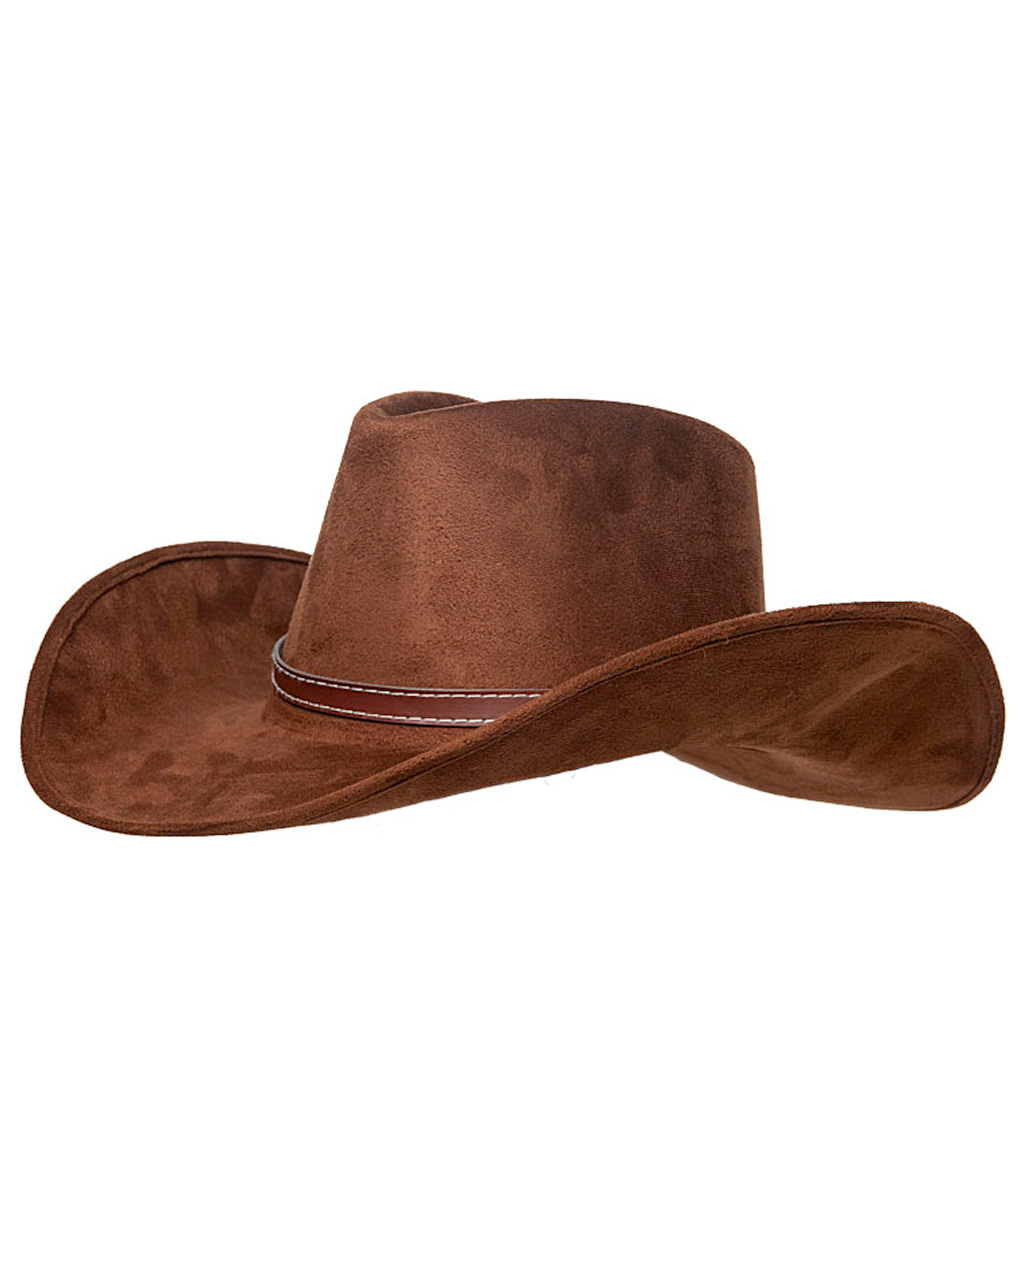 brauner Sheriff Cowboy Hut für Kinder